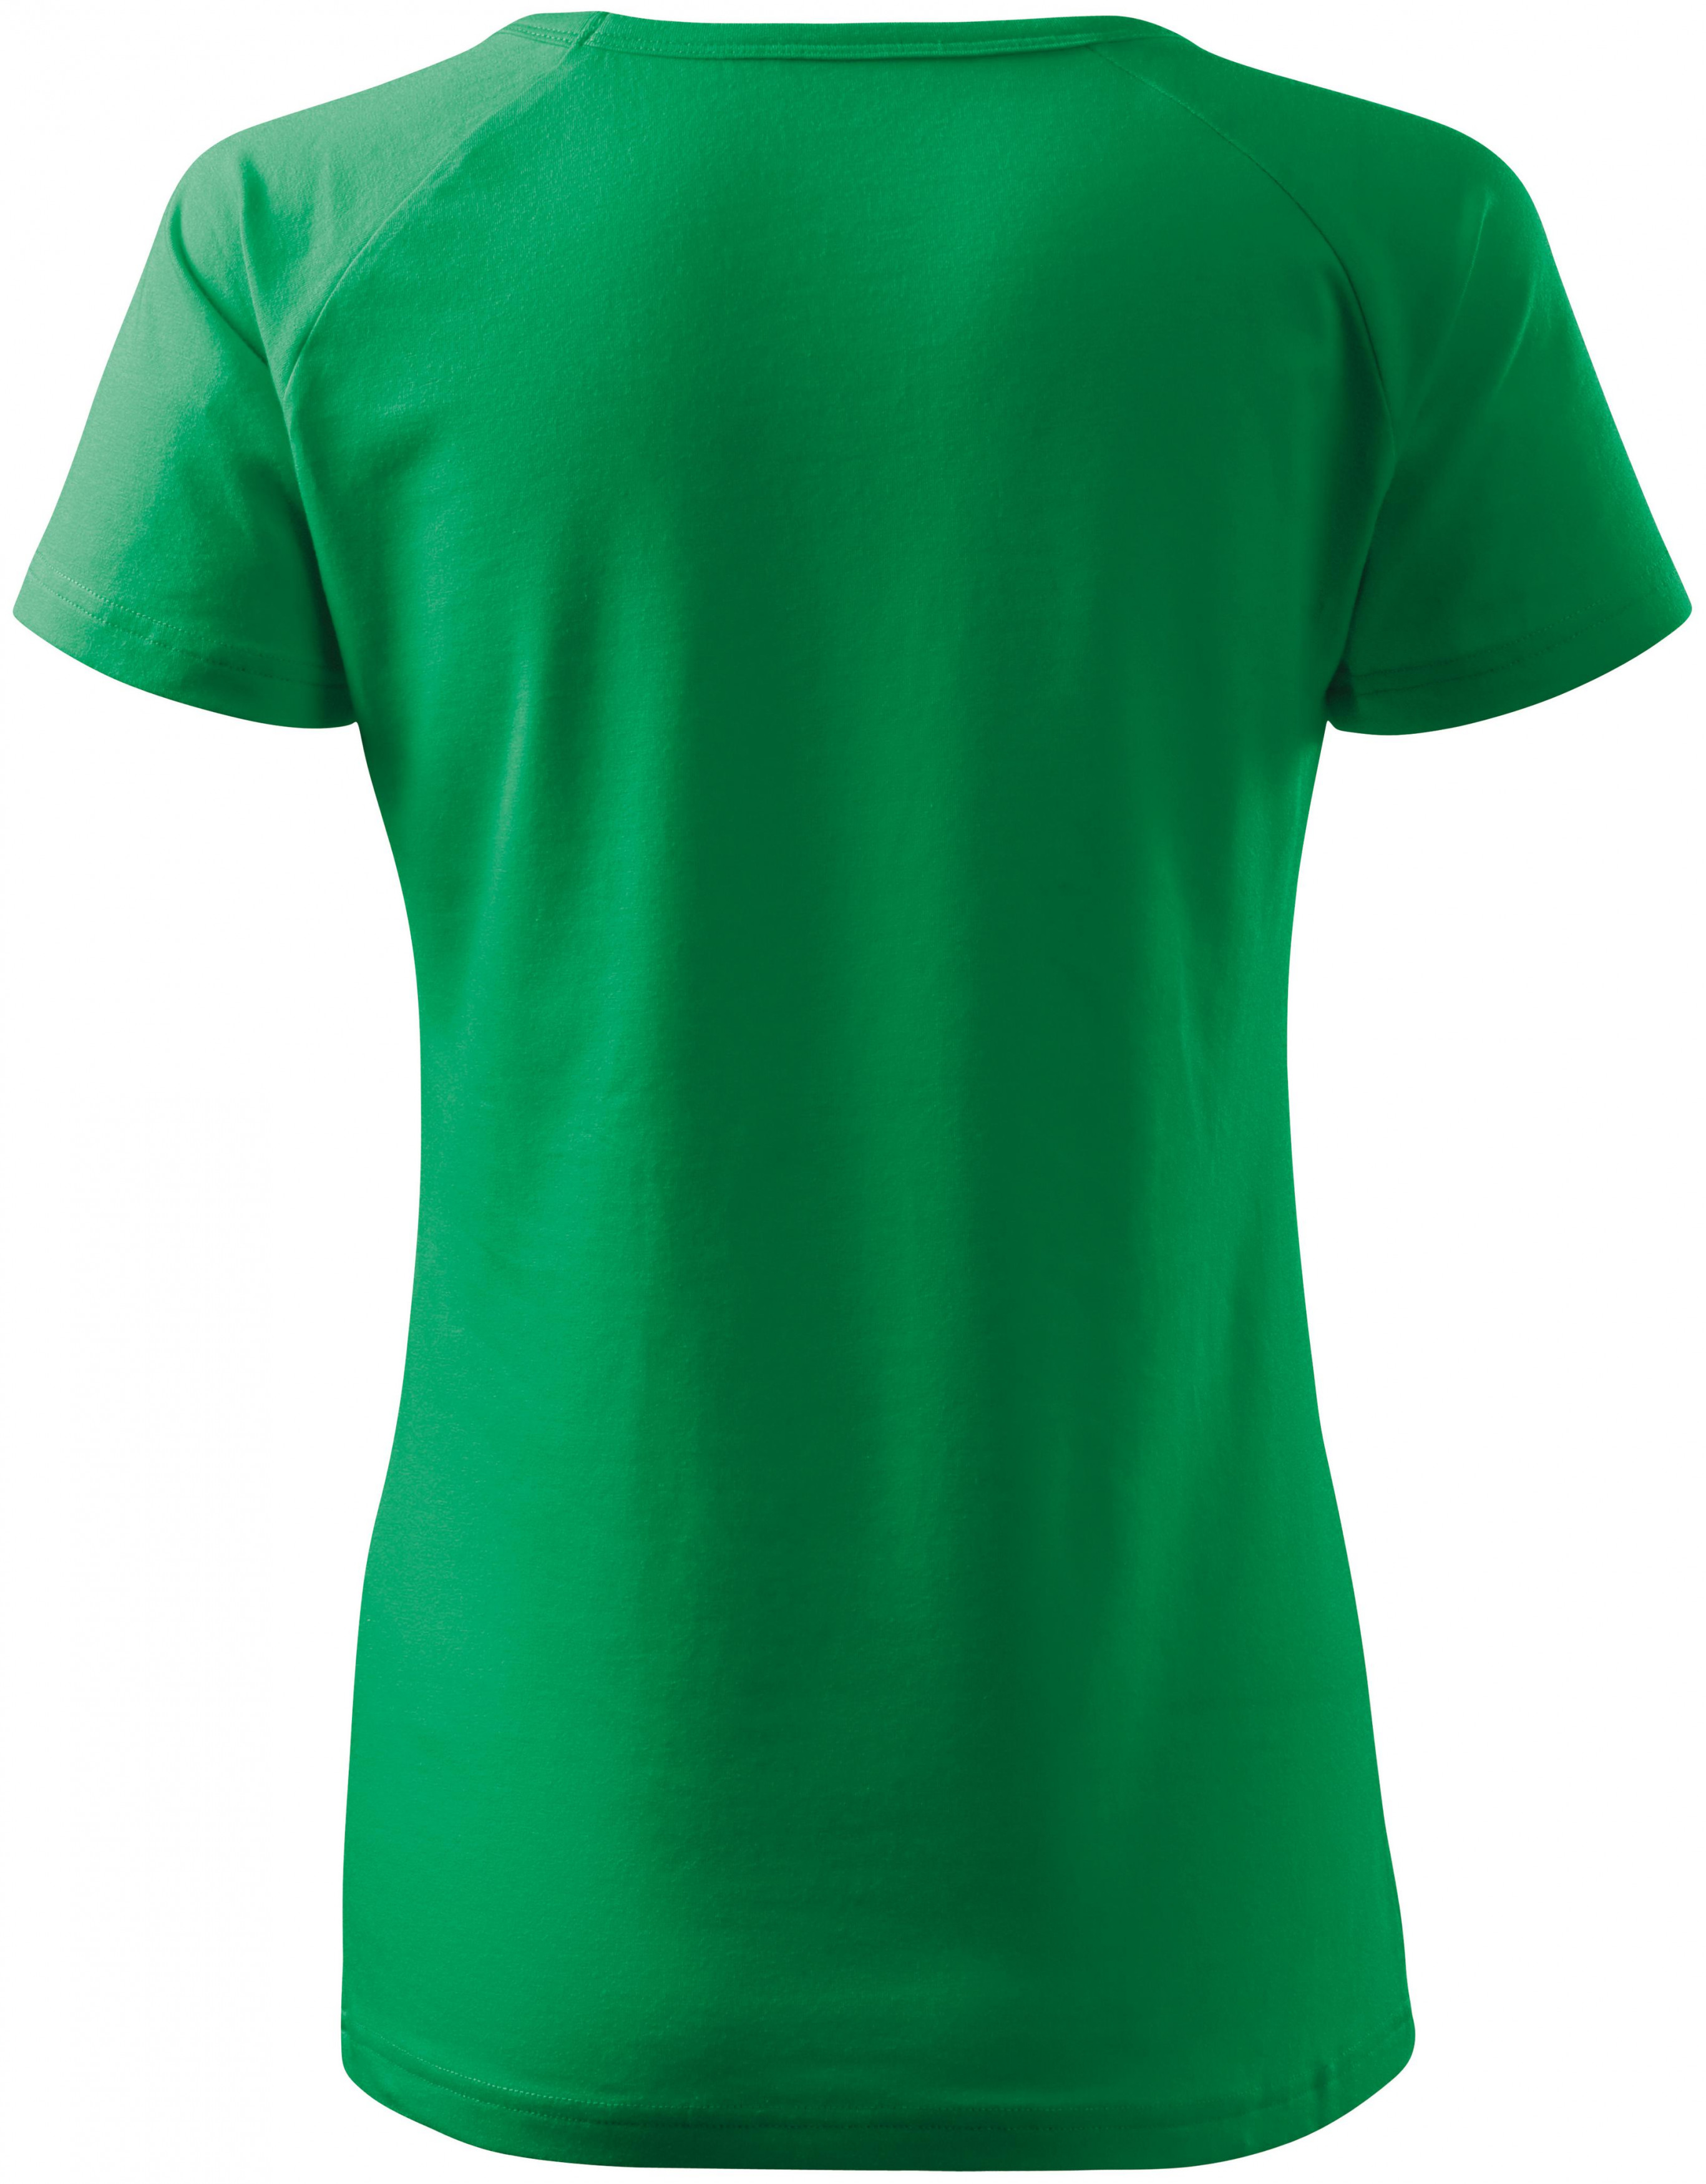 Dámske tričko zúžené, raglánový rukáv, trávová zelená, M